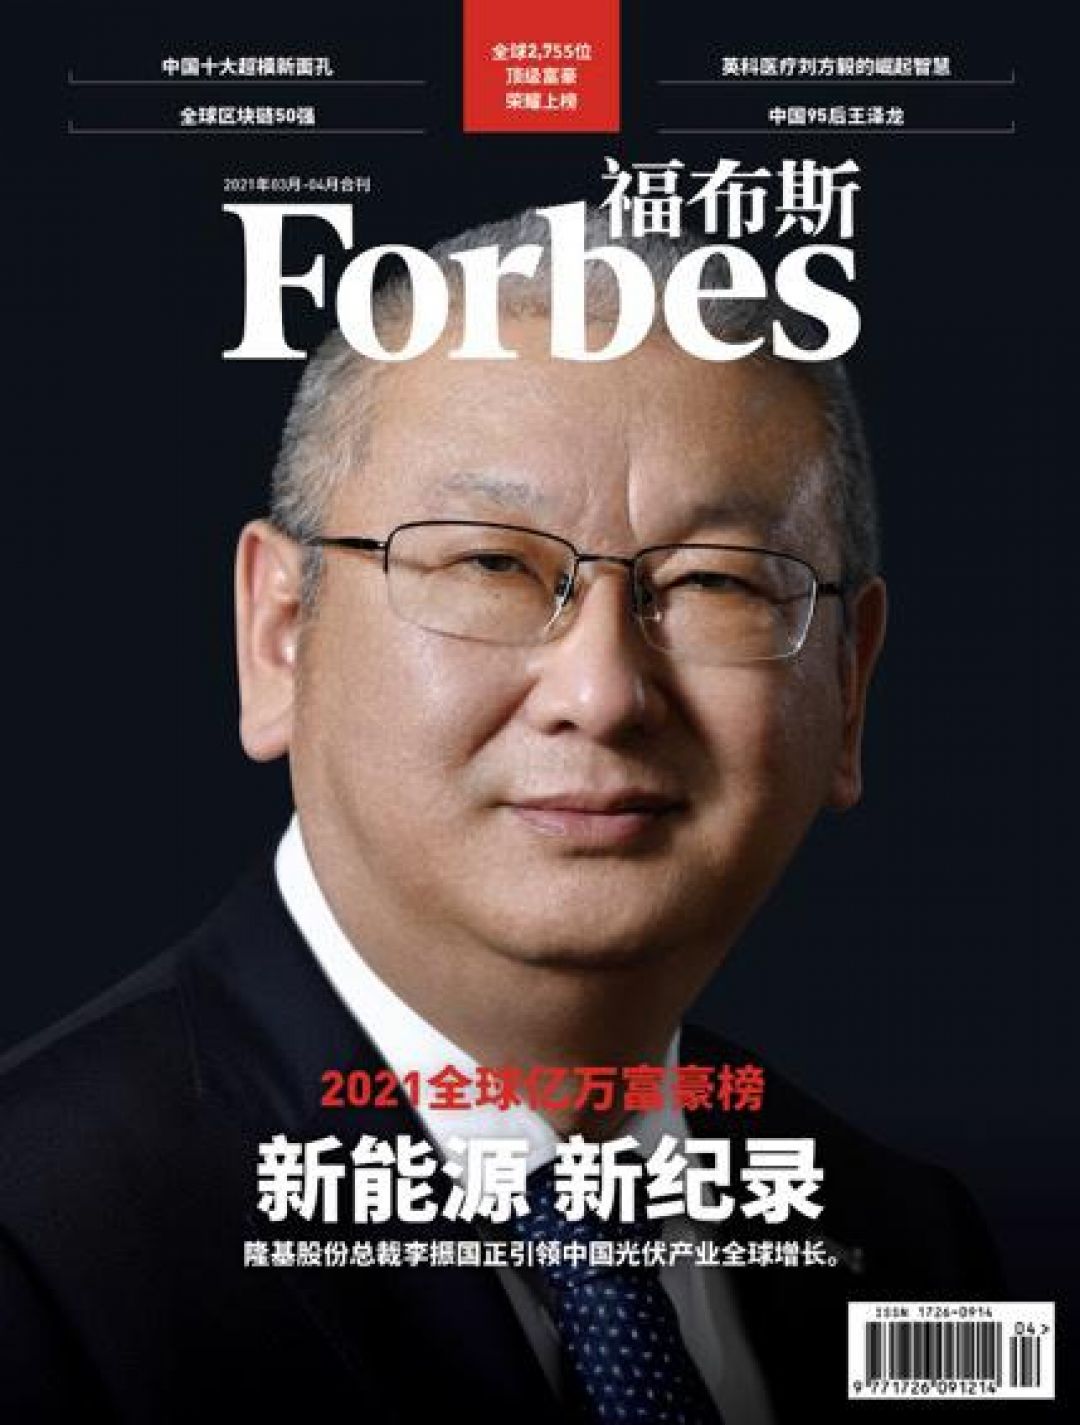 10 CEO Teratas di China Versi Forbes China-Image-7